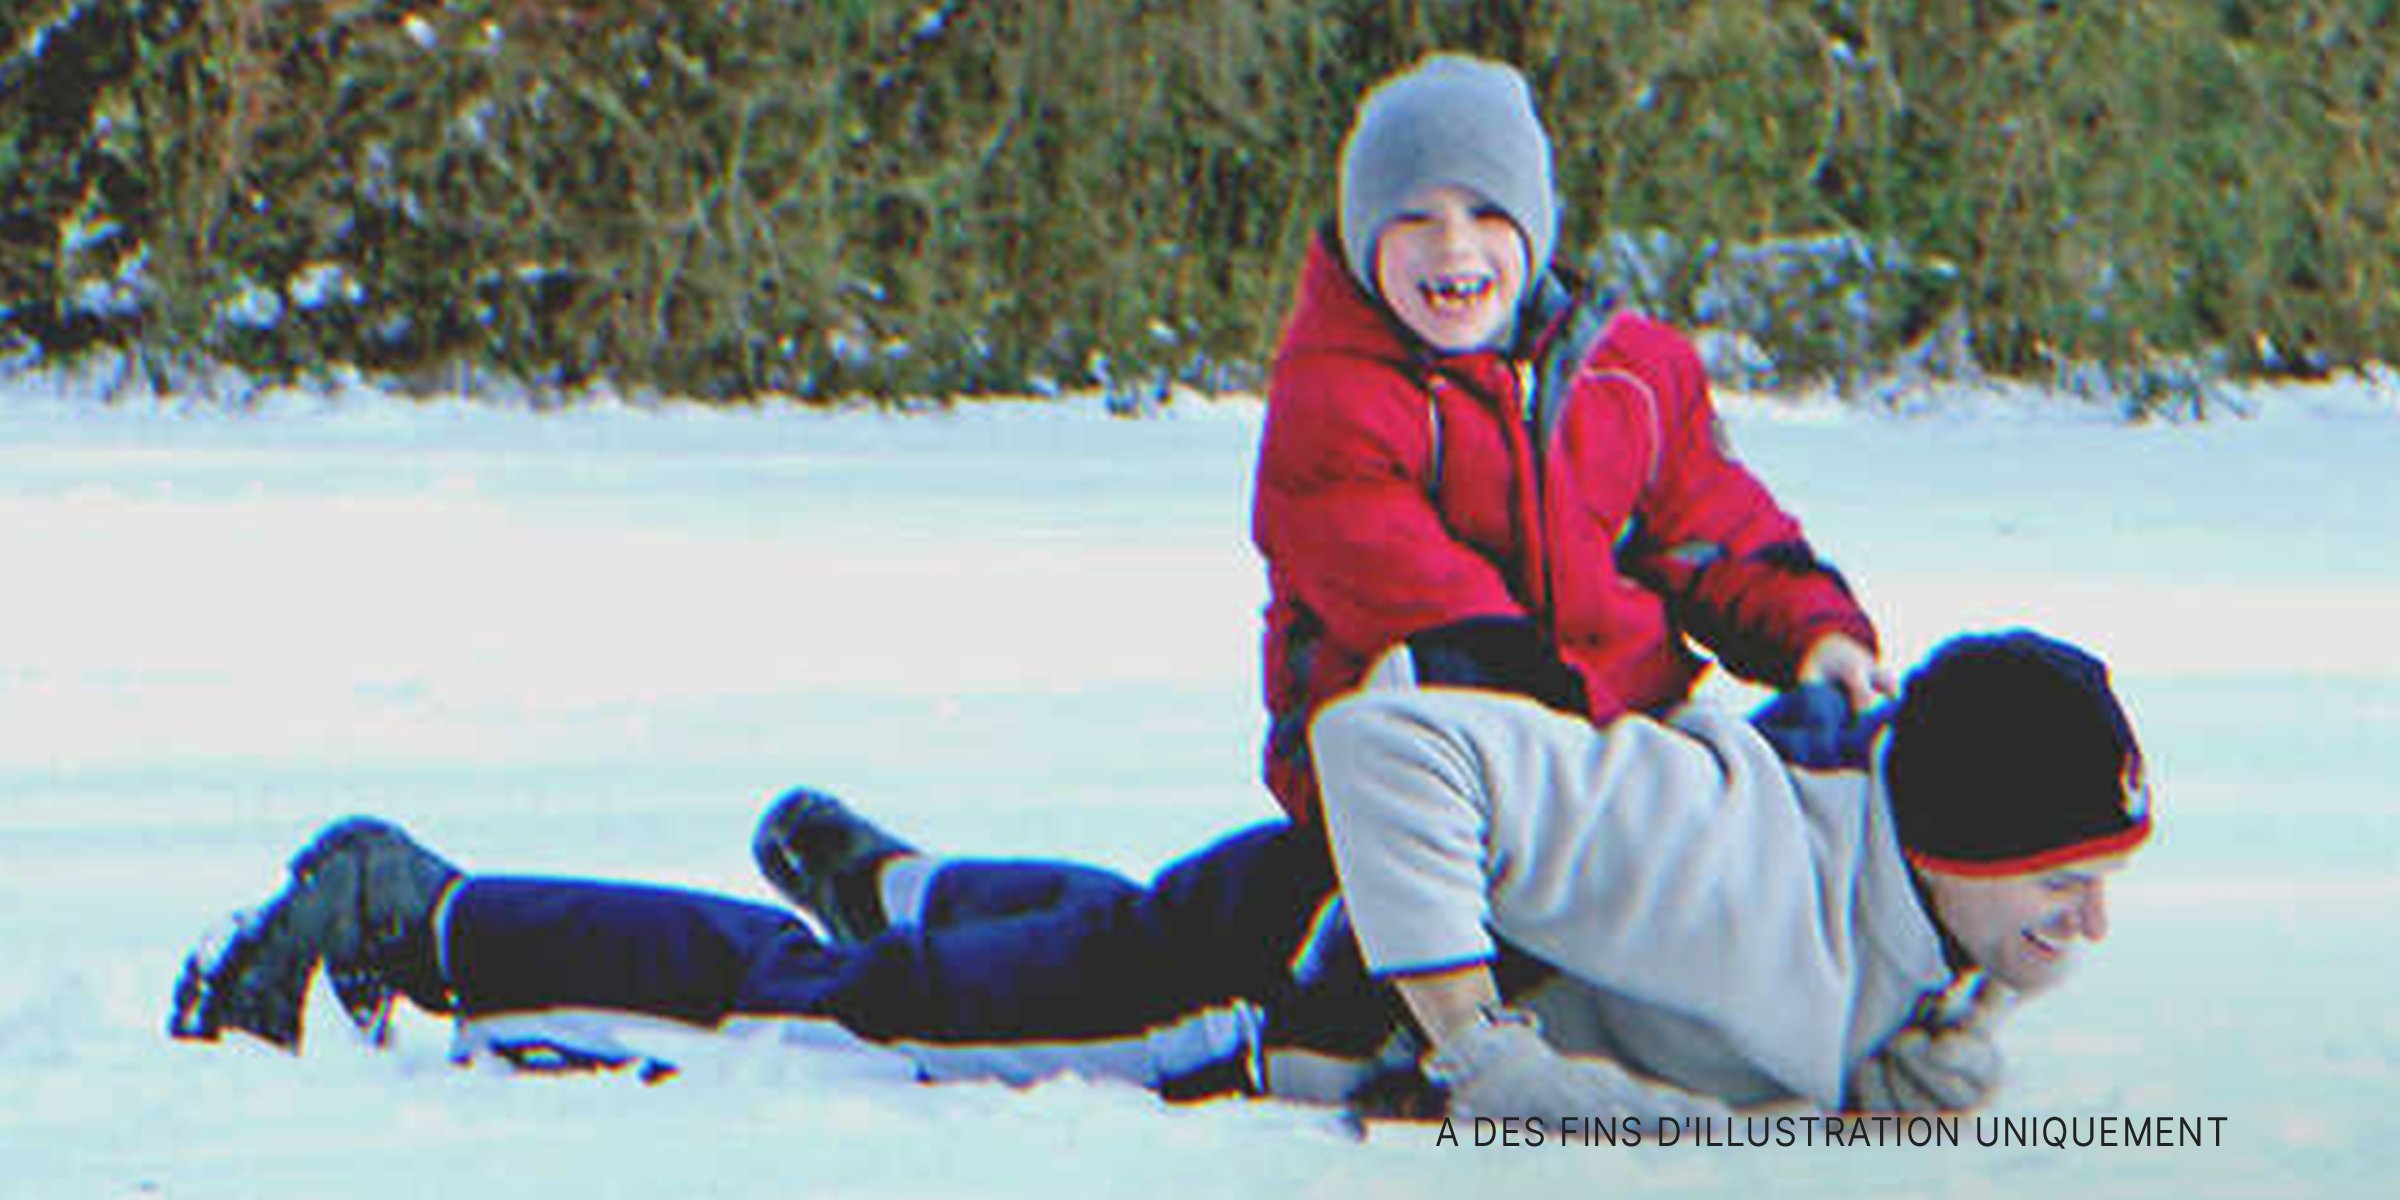 Un homme avec un enfant jouant dans la neige | Source : Flickr/popofatticus (CC BY 2.0) 